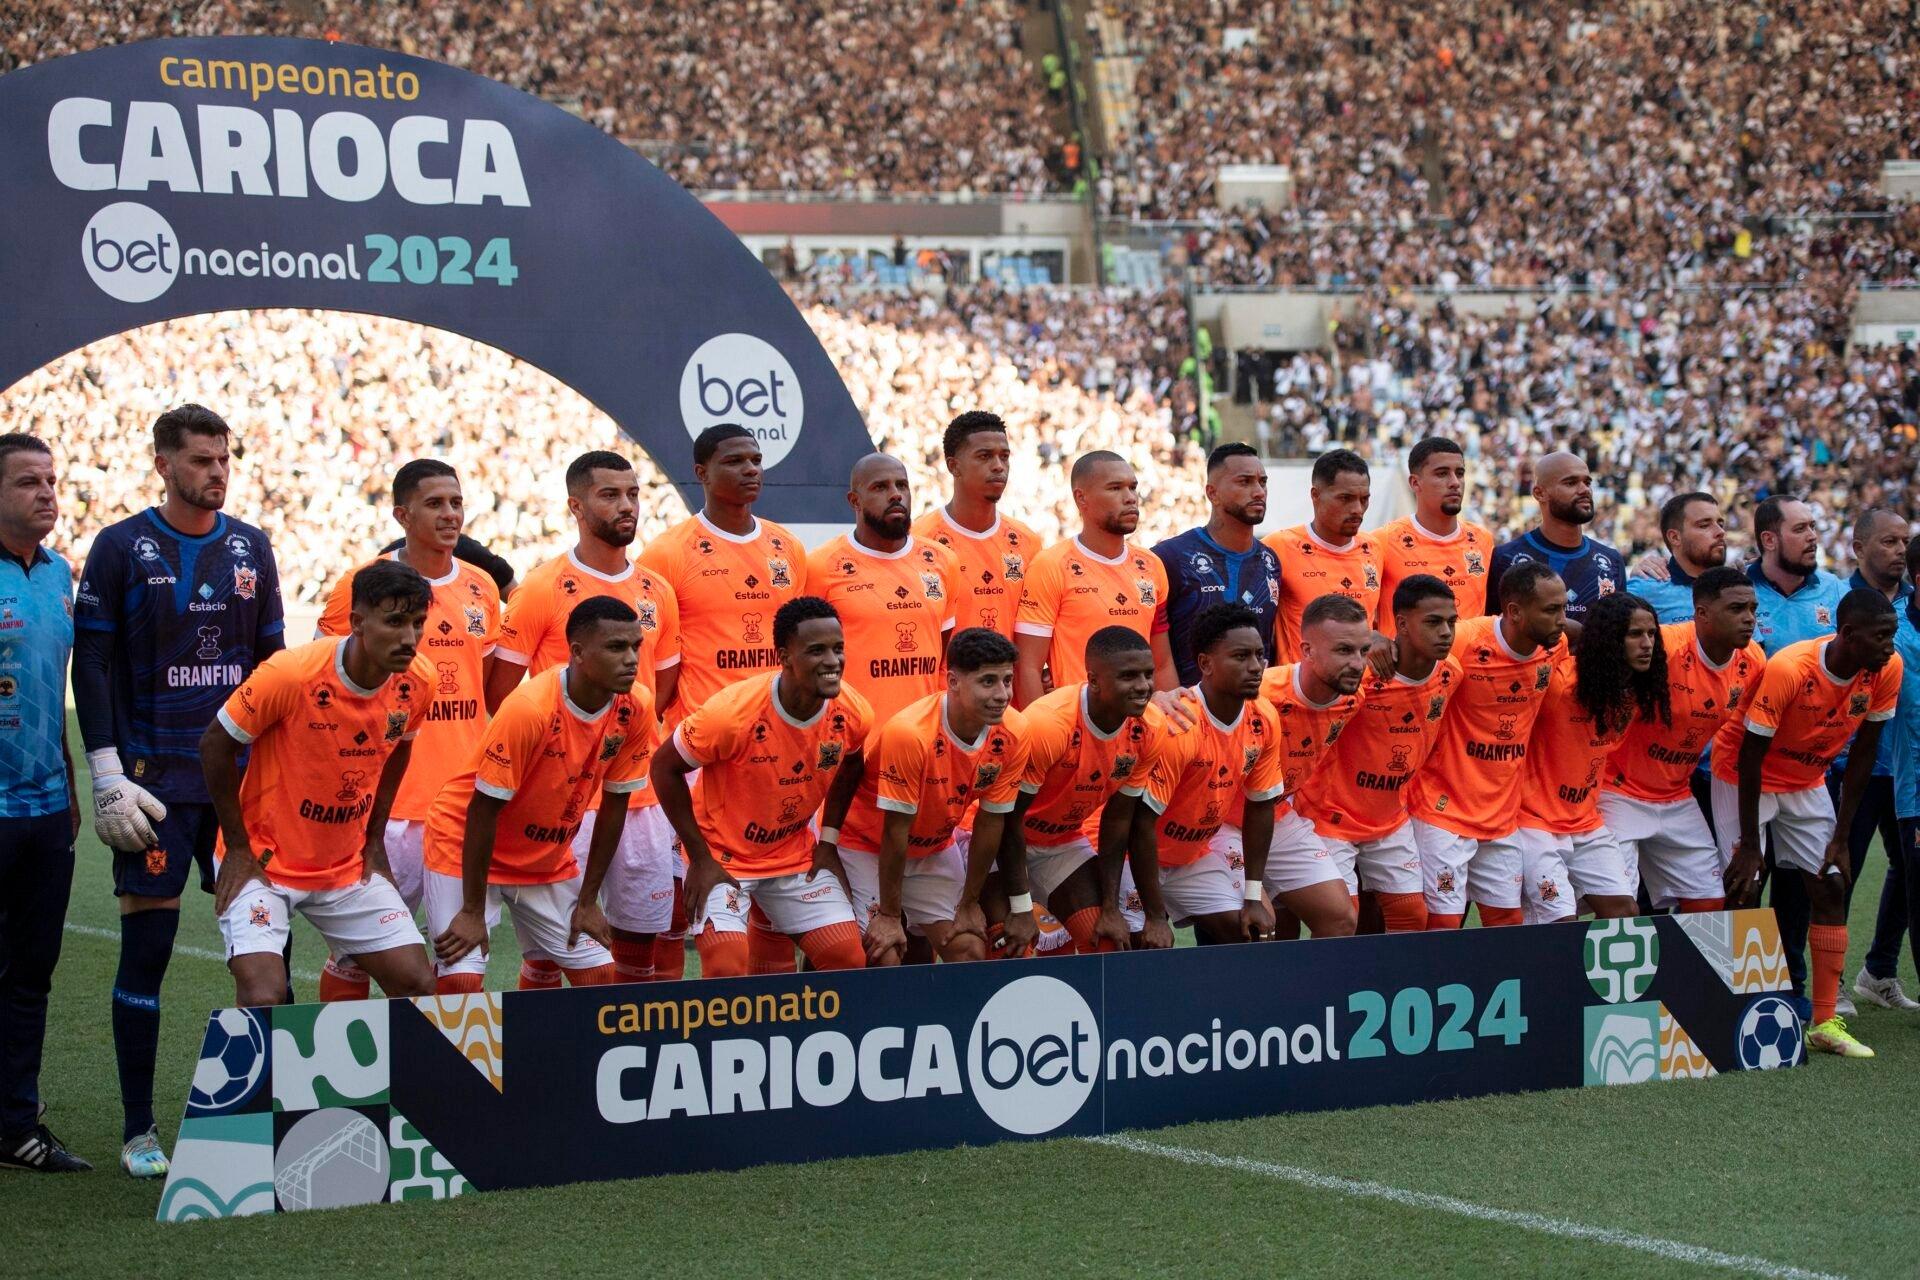 Nova Iguaçu x Vasco - Flamengo - Campeonato Carioca